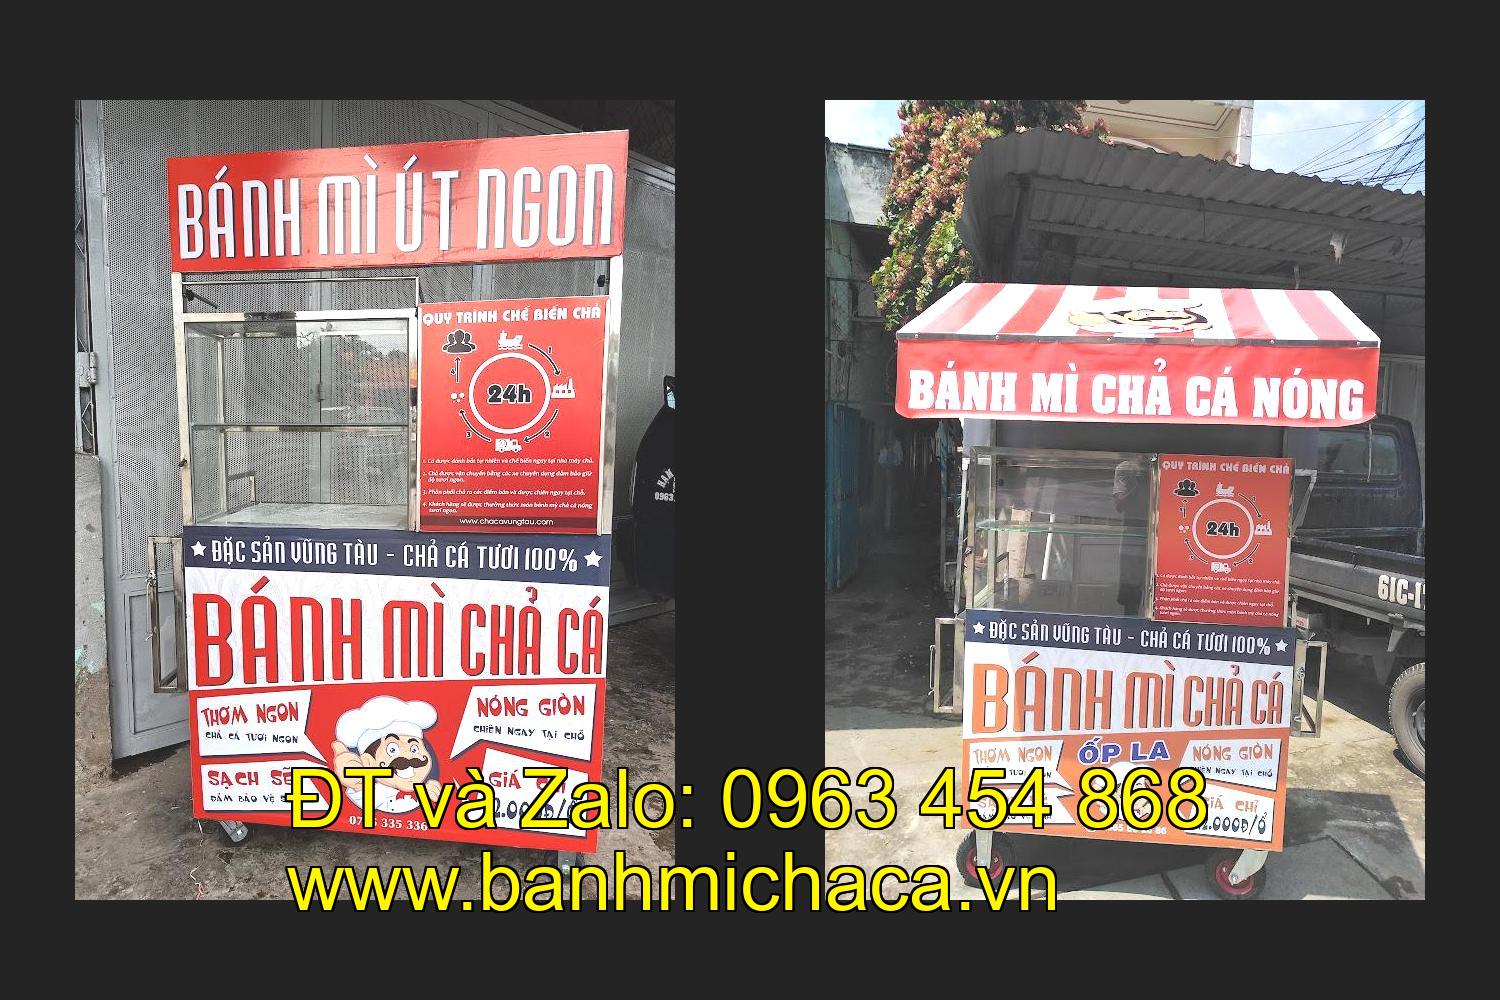 Cần chọn mua xe bán bánh mì chả cá inox ở tỉnh Bạc Liêu